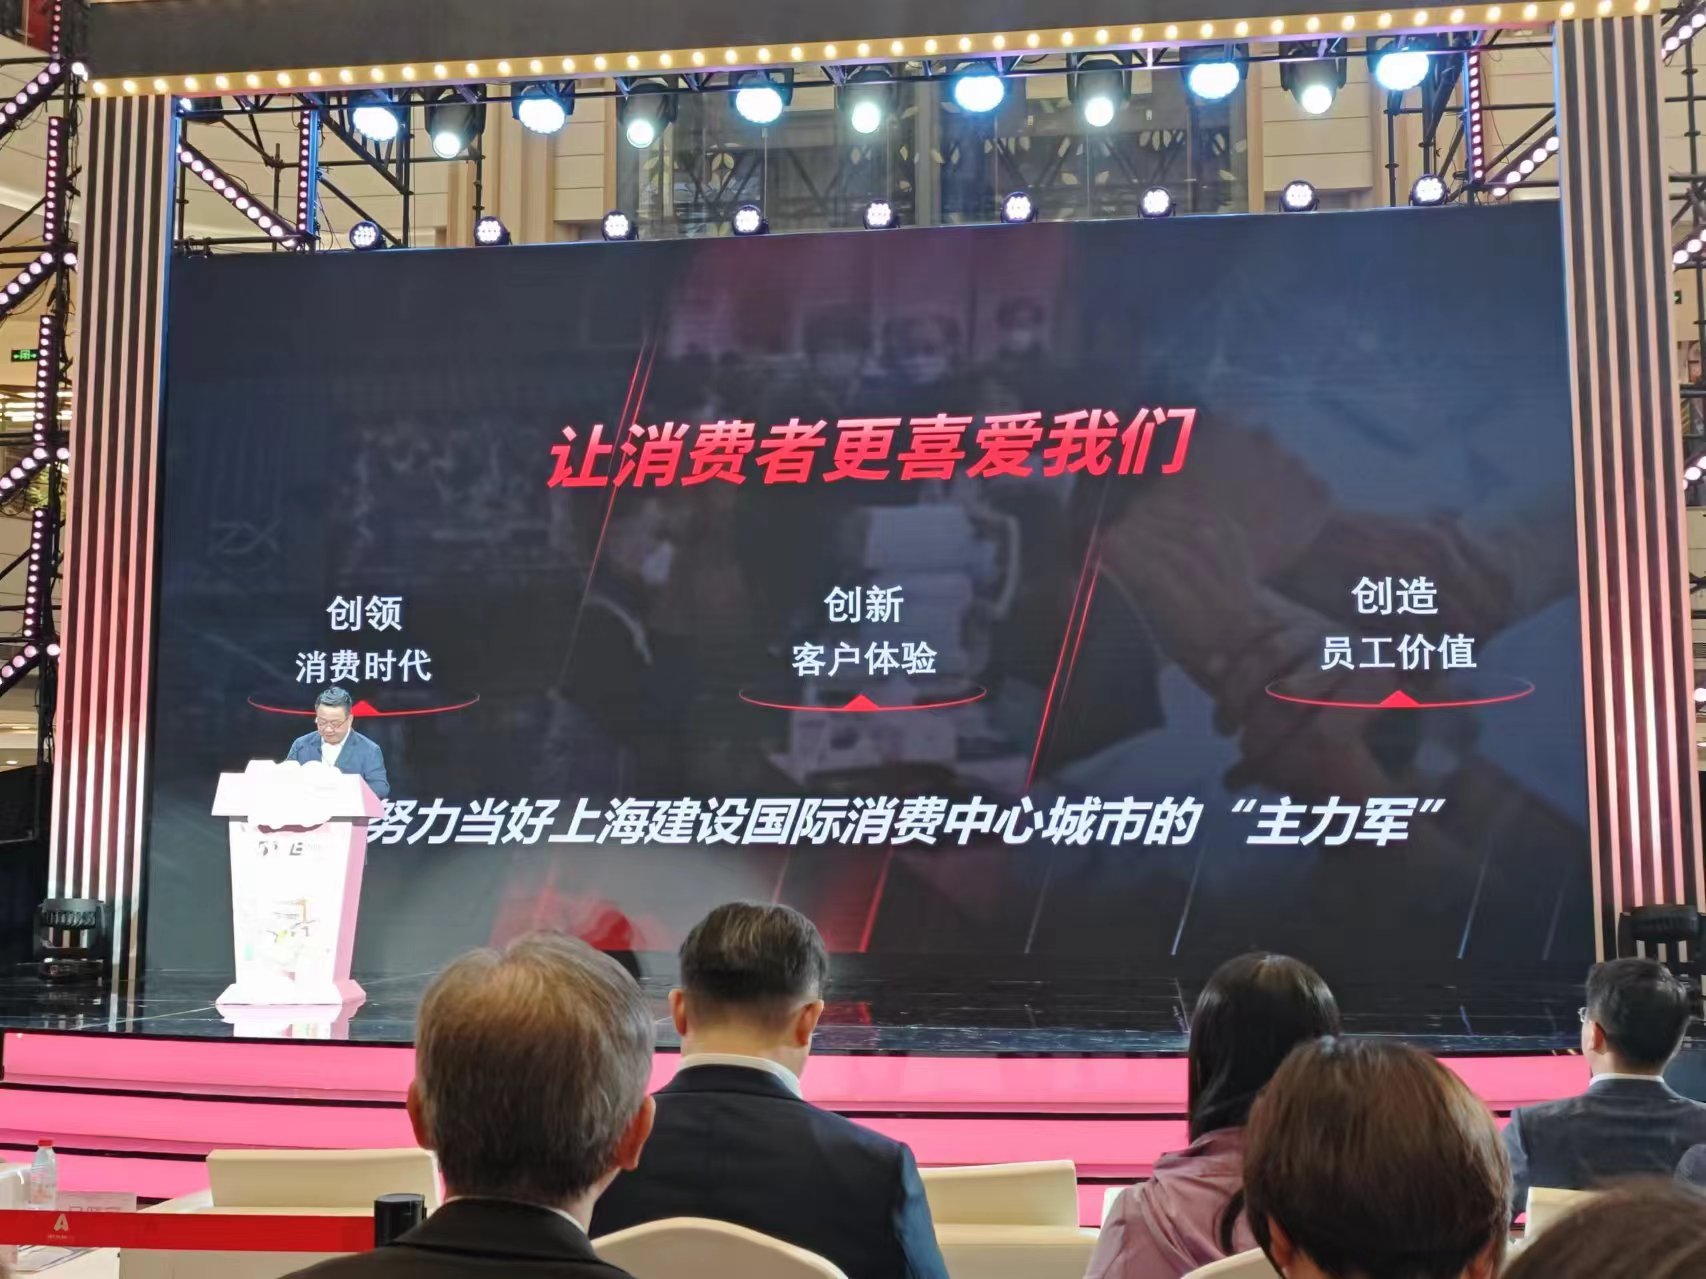 百联将推出六大重点服务举措。劳动报记者陆燕婷 摄影